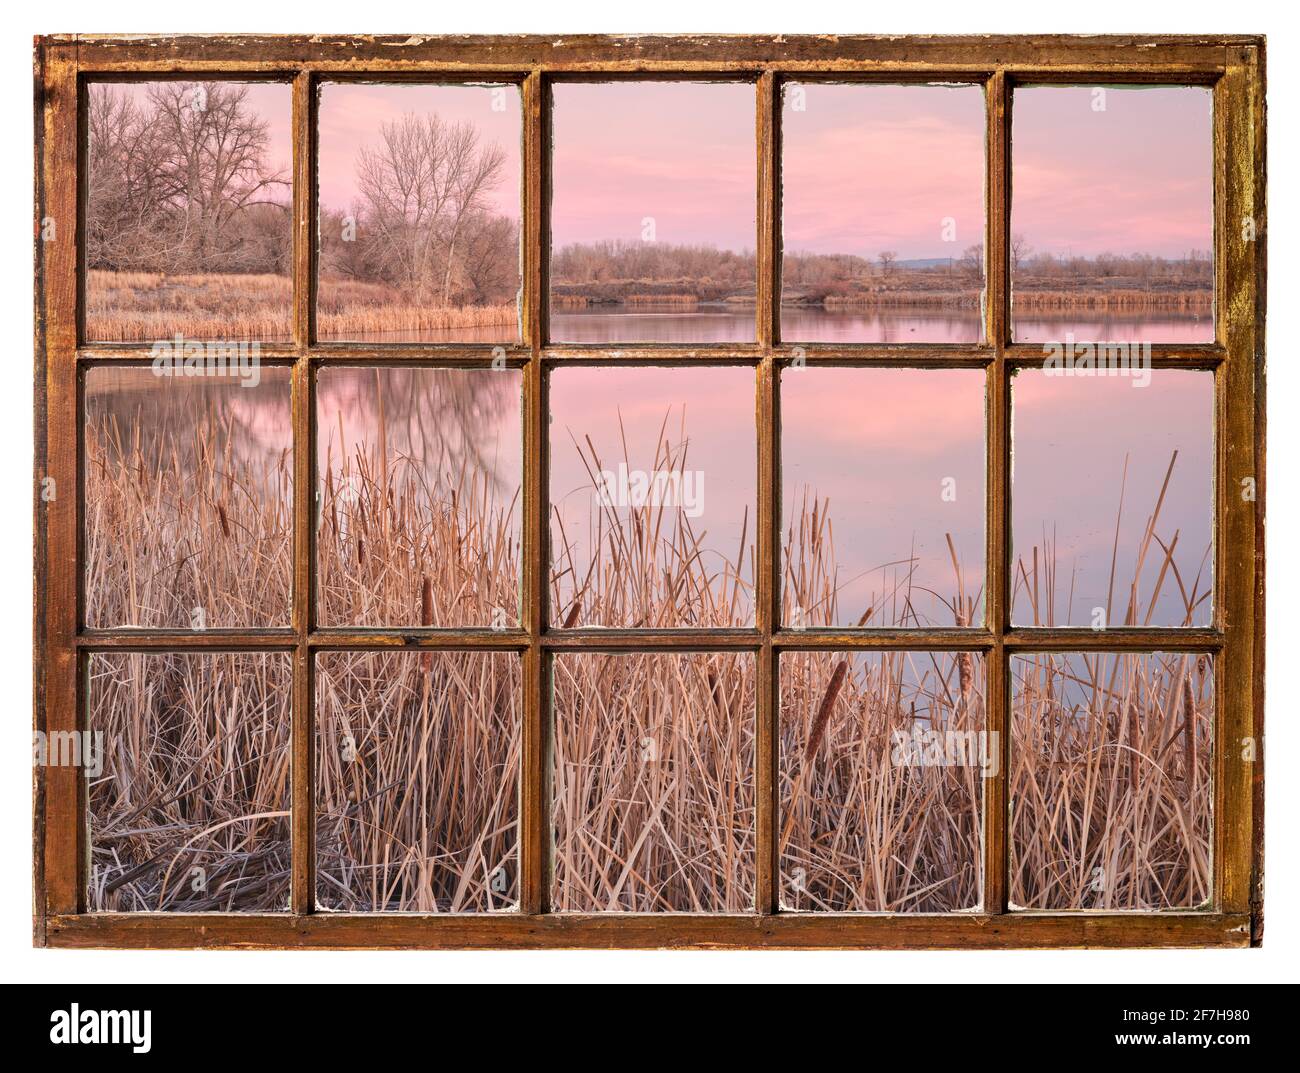 Frühe Frühlingsdämmerung über einem ruhigen See mit Schilf als Von einem alten Kabinenfenster aus gesehen Stockfoto